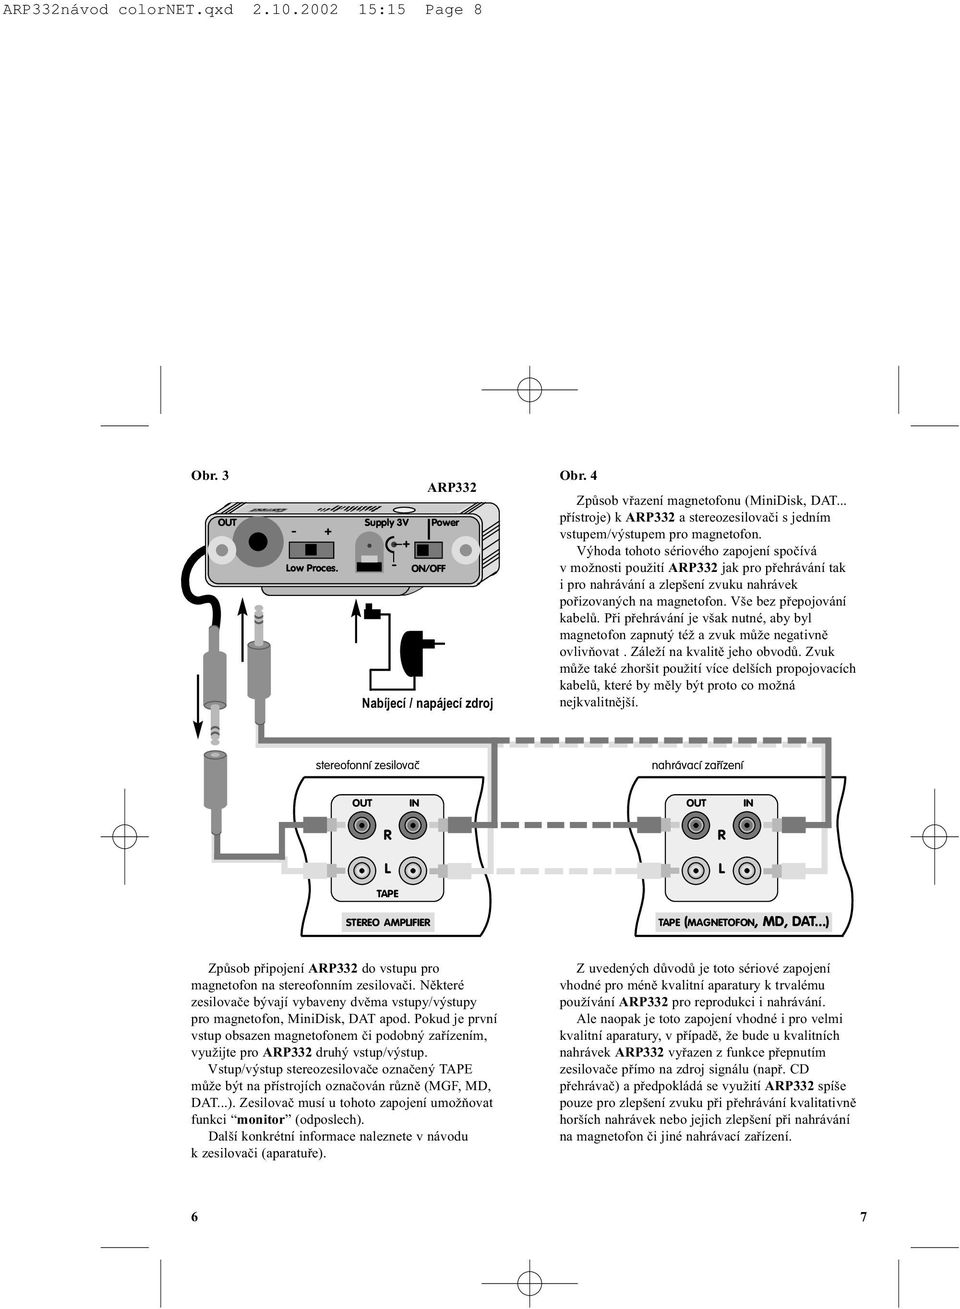 .. pøístroje) k ARP332 a stereozesilovaèi s jedním vstupem/výstupem pro magnetofon.